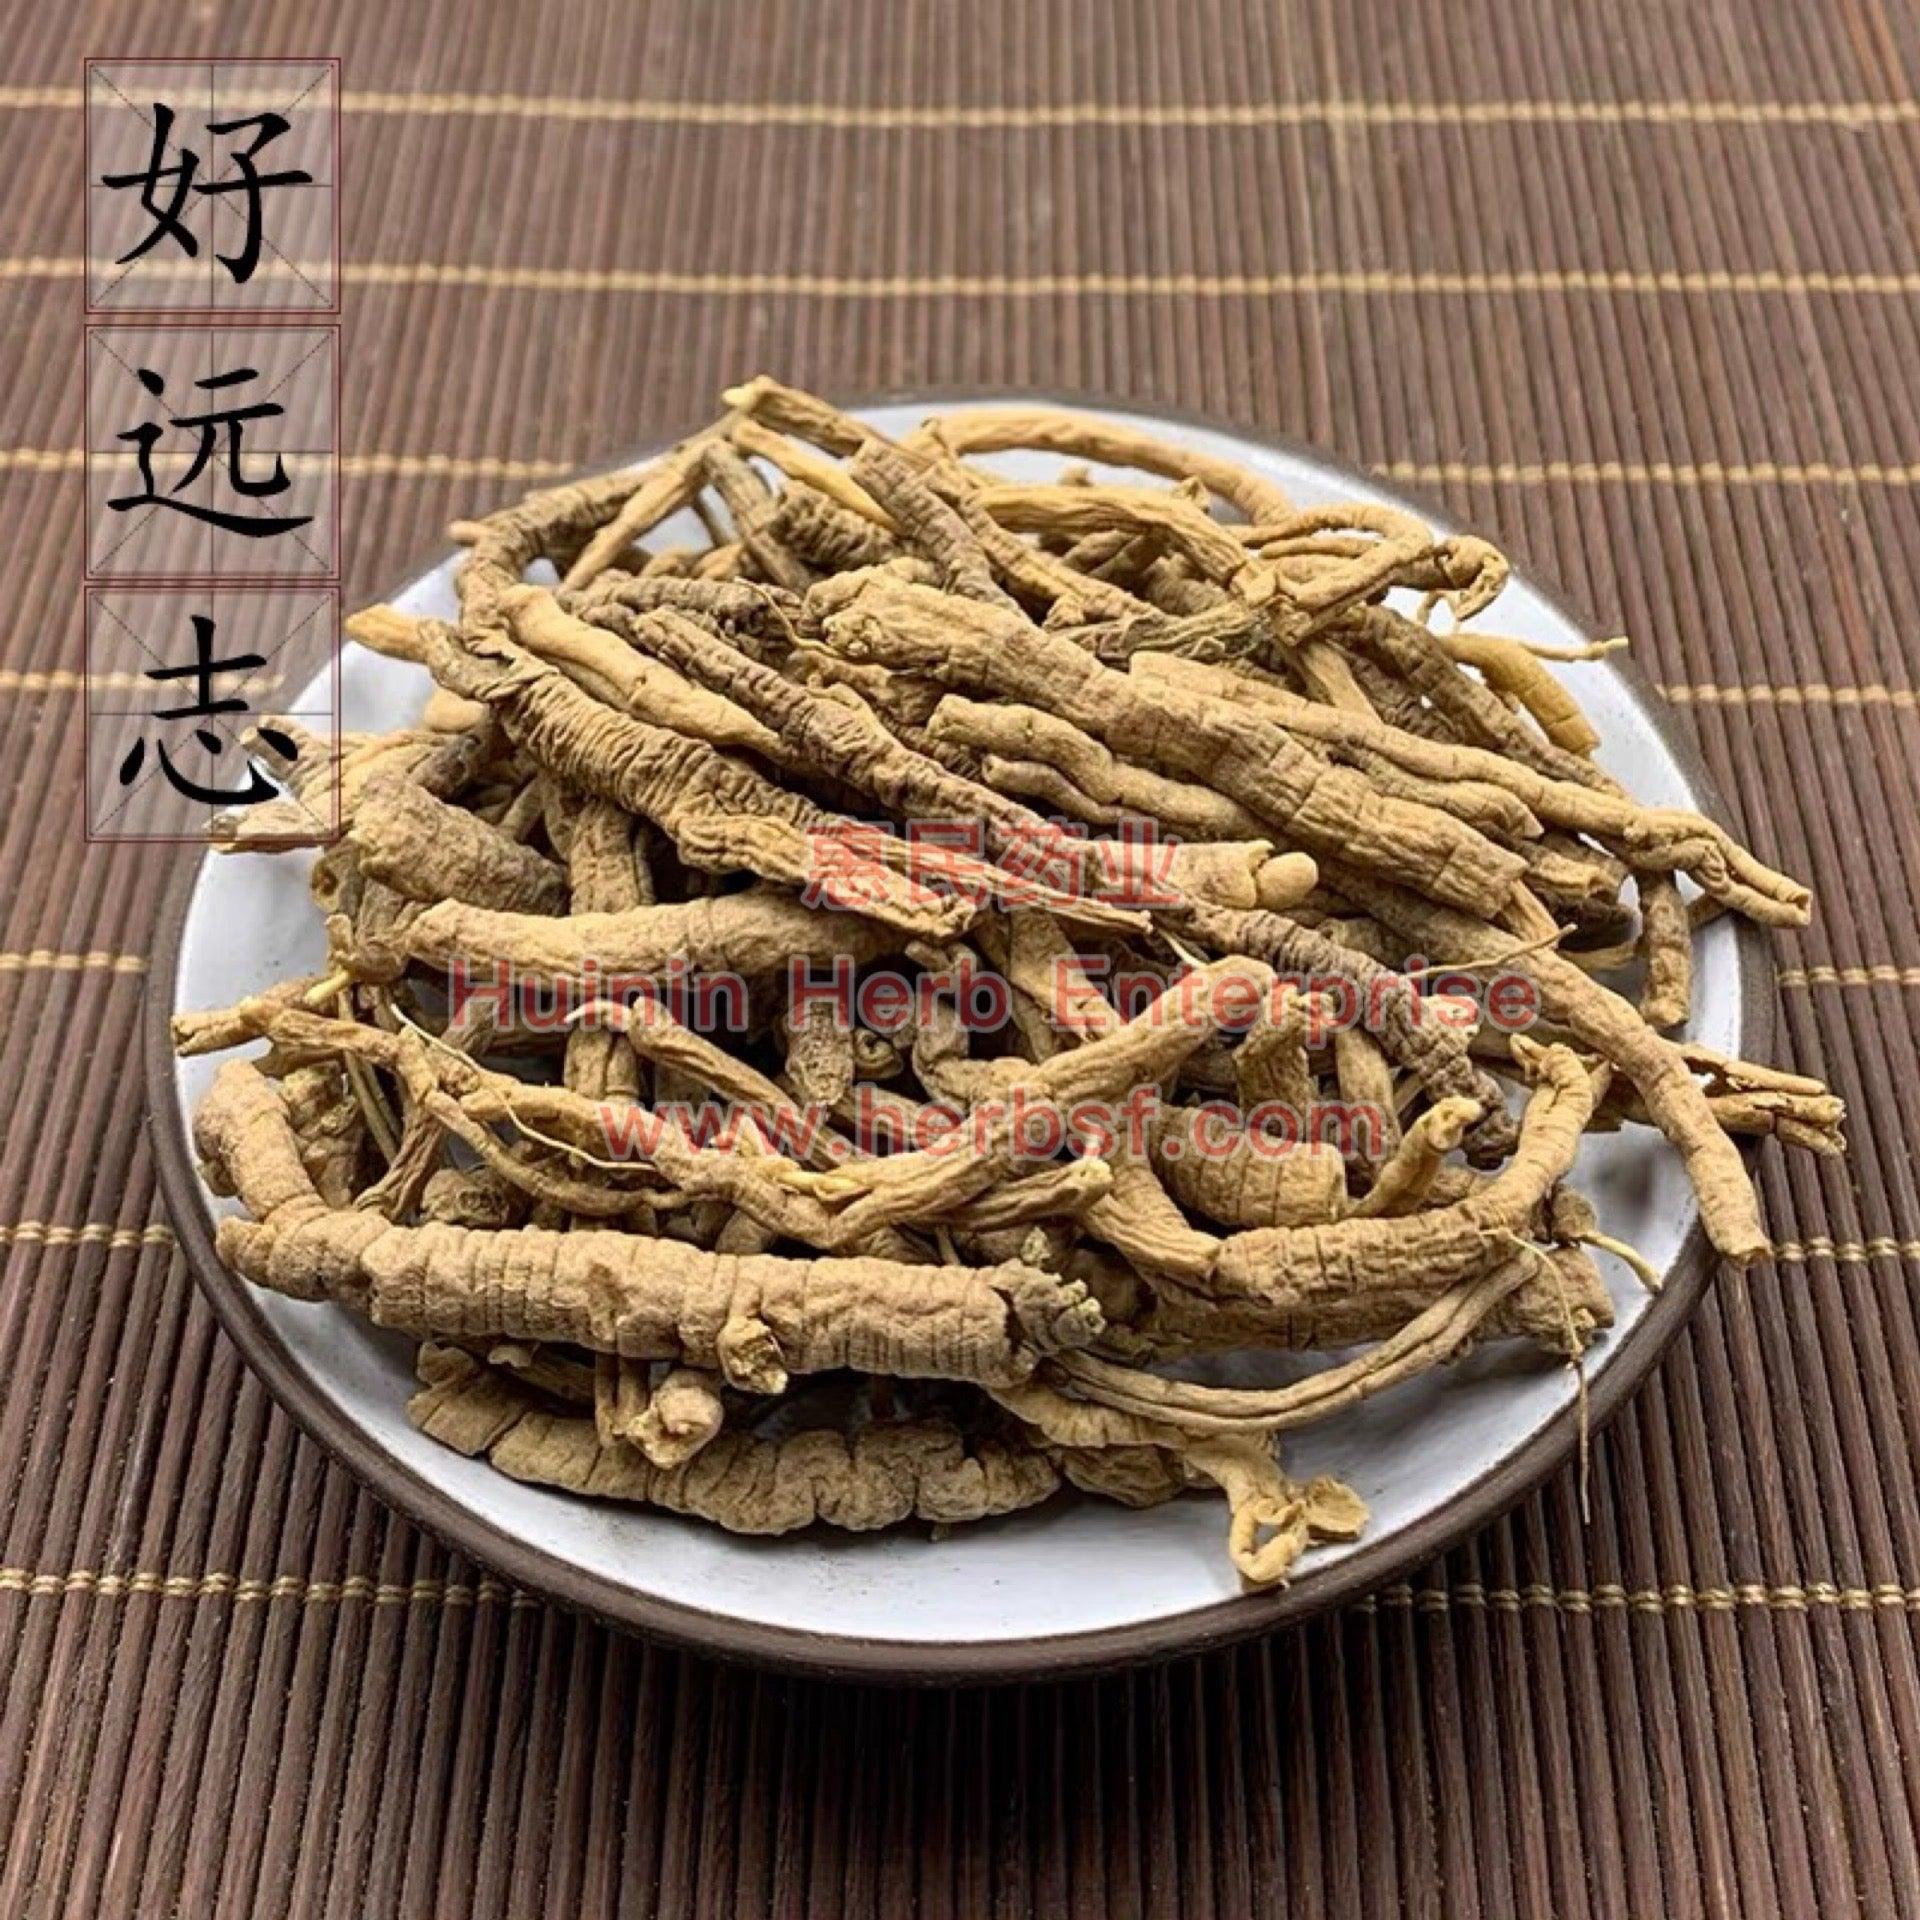 Yuan Zhi 4oz - Huimin Herb Online, LLC